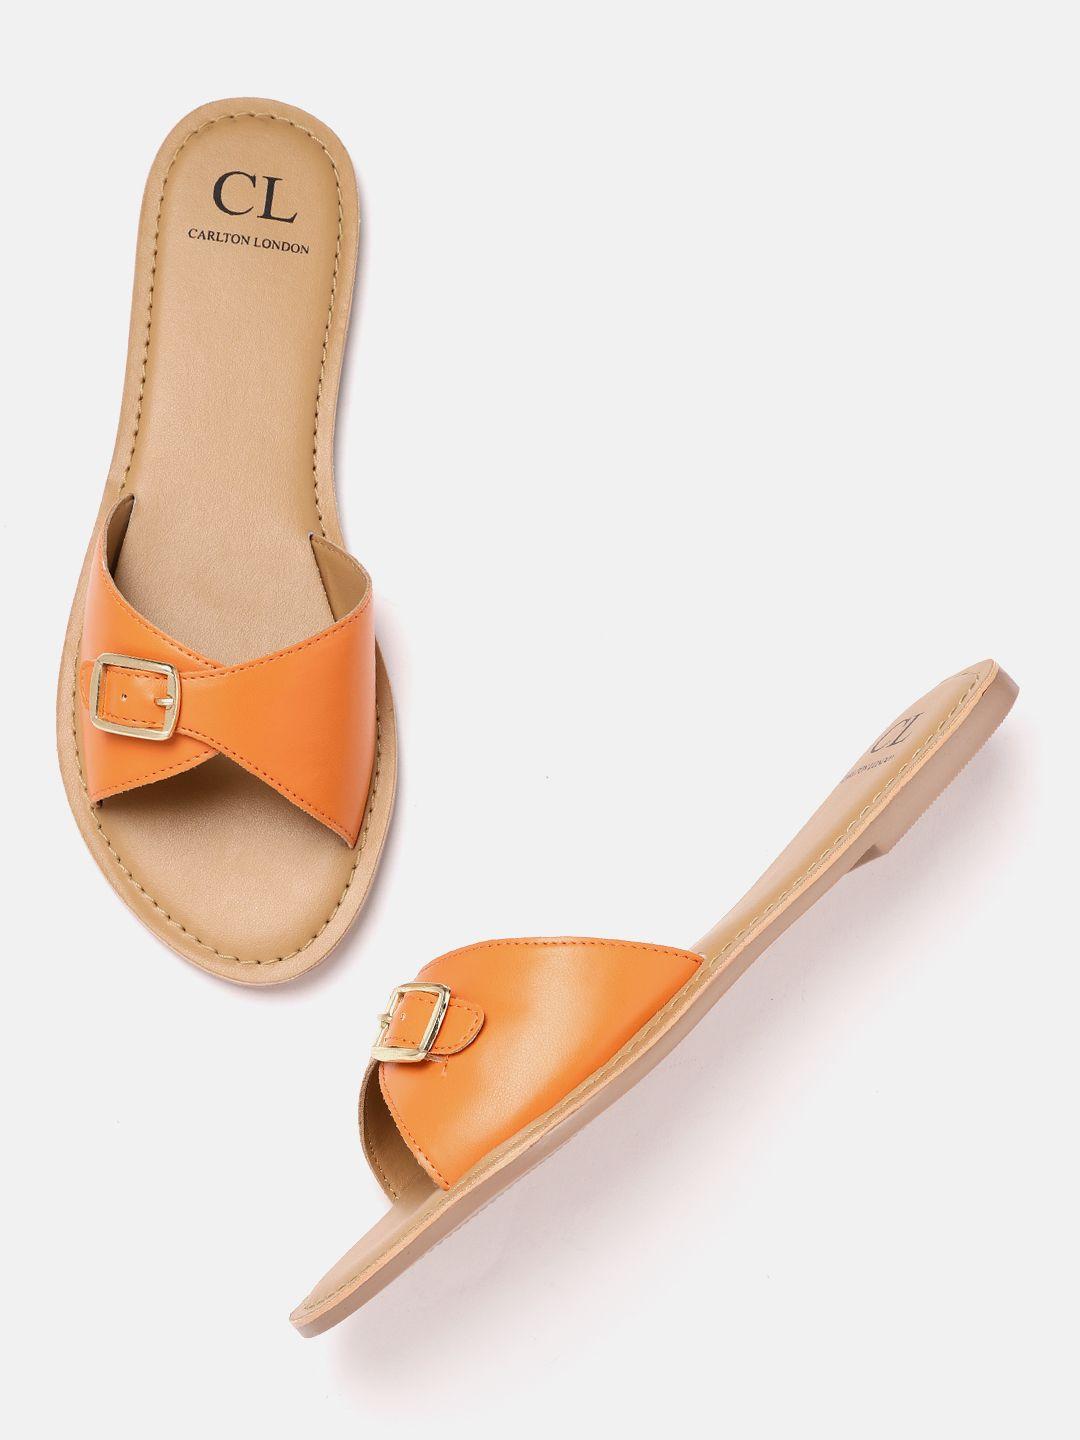 carlton london women orange open toe flats with buckles